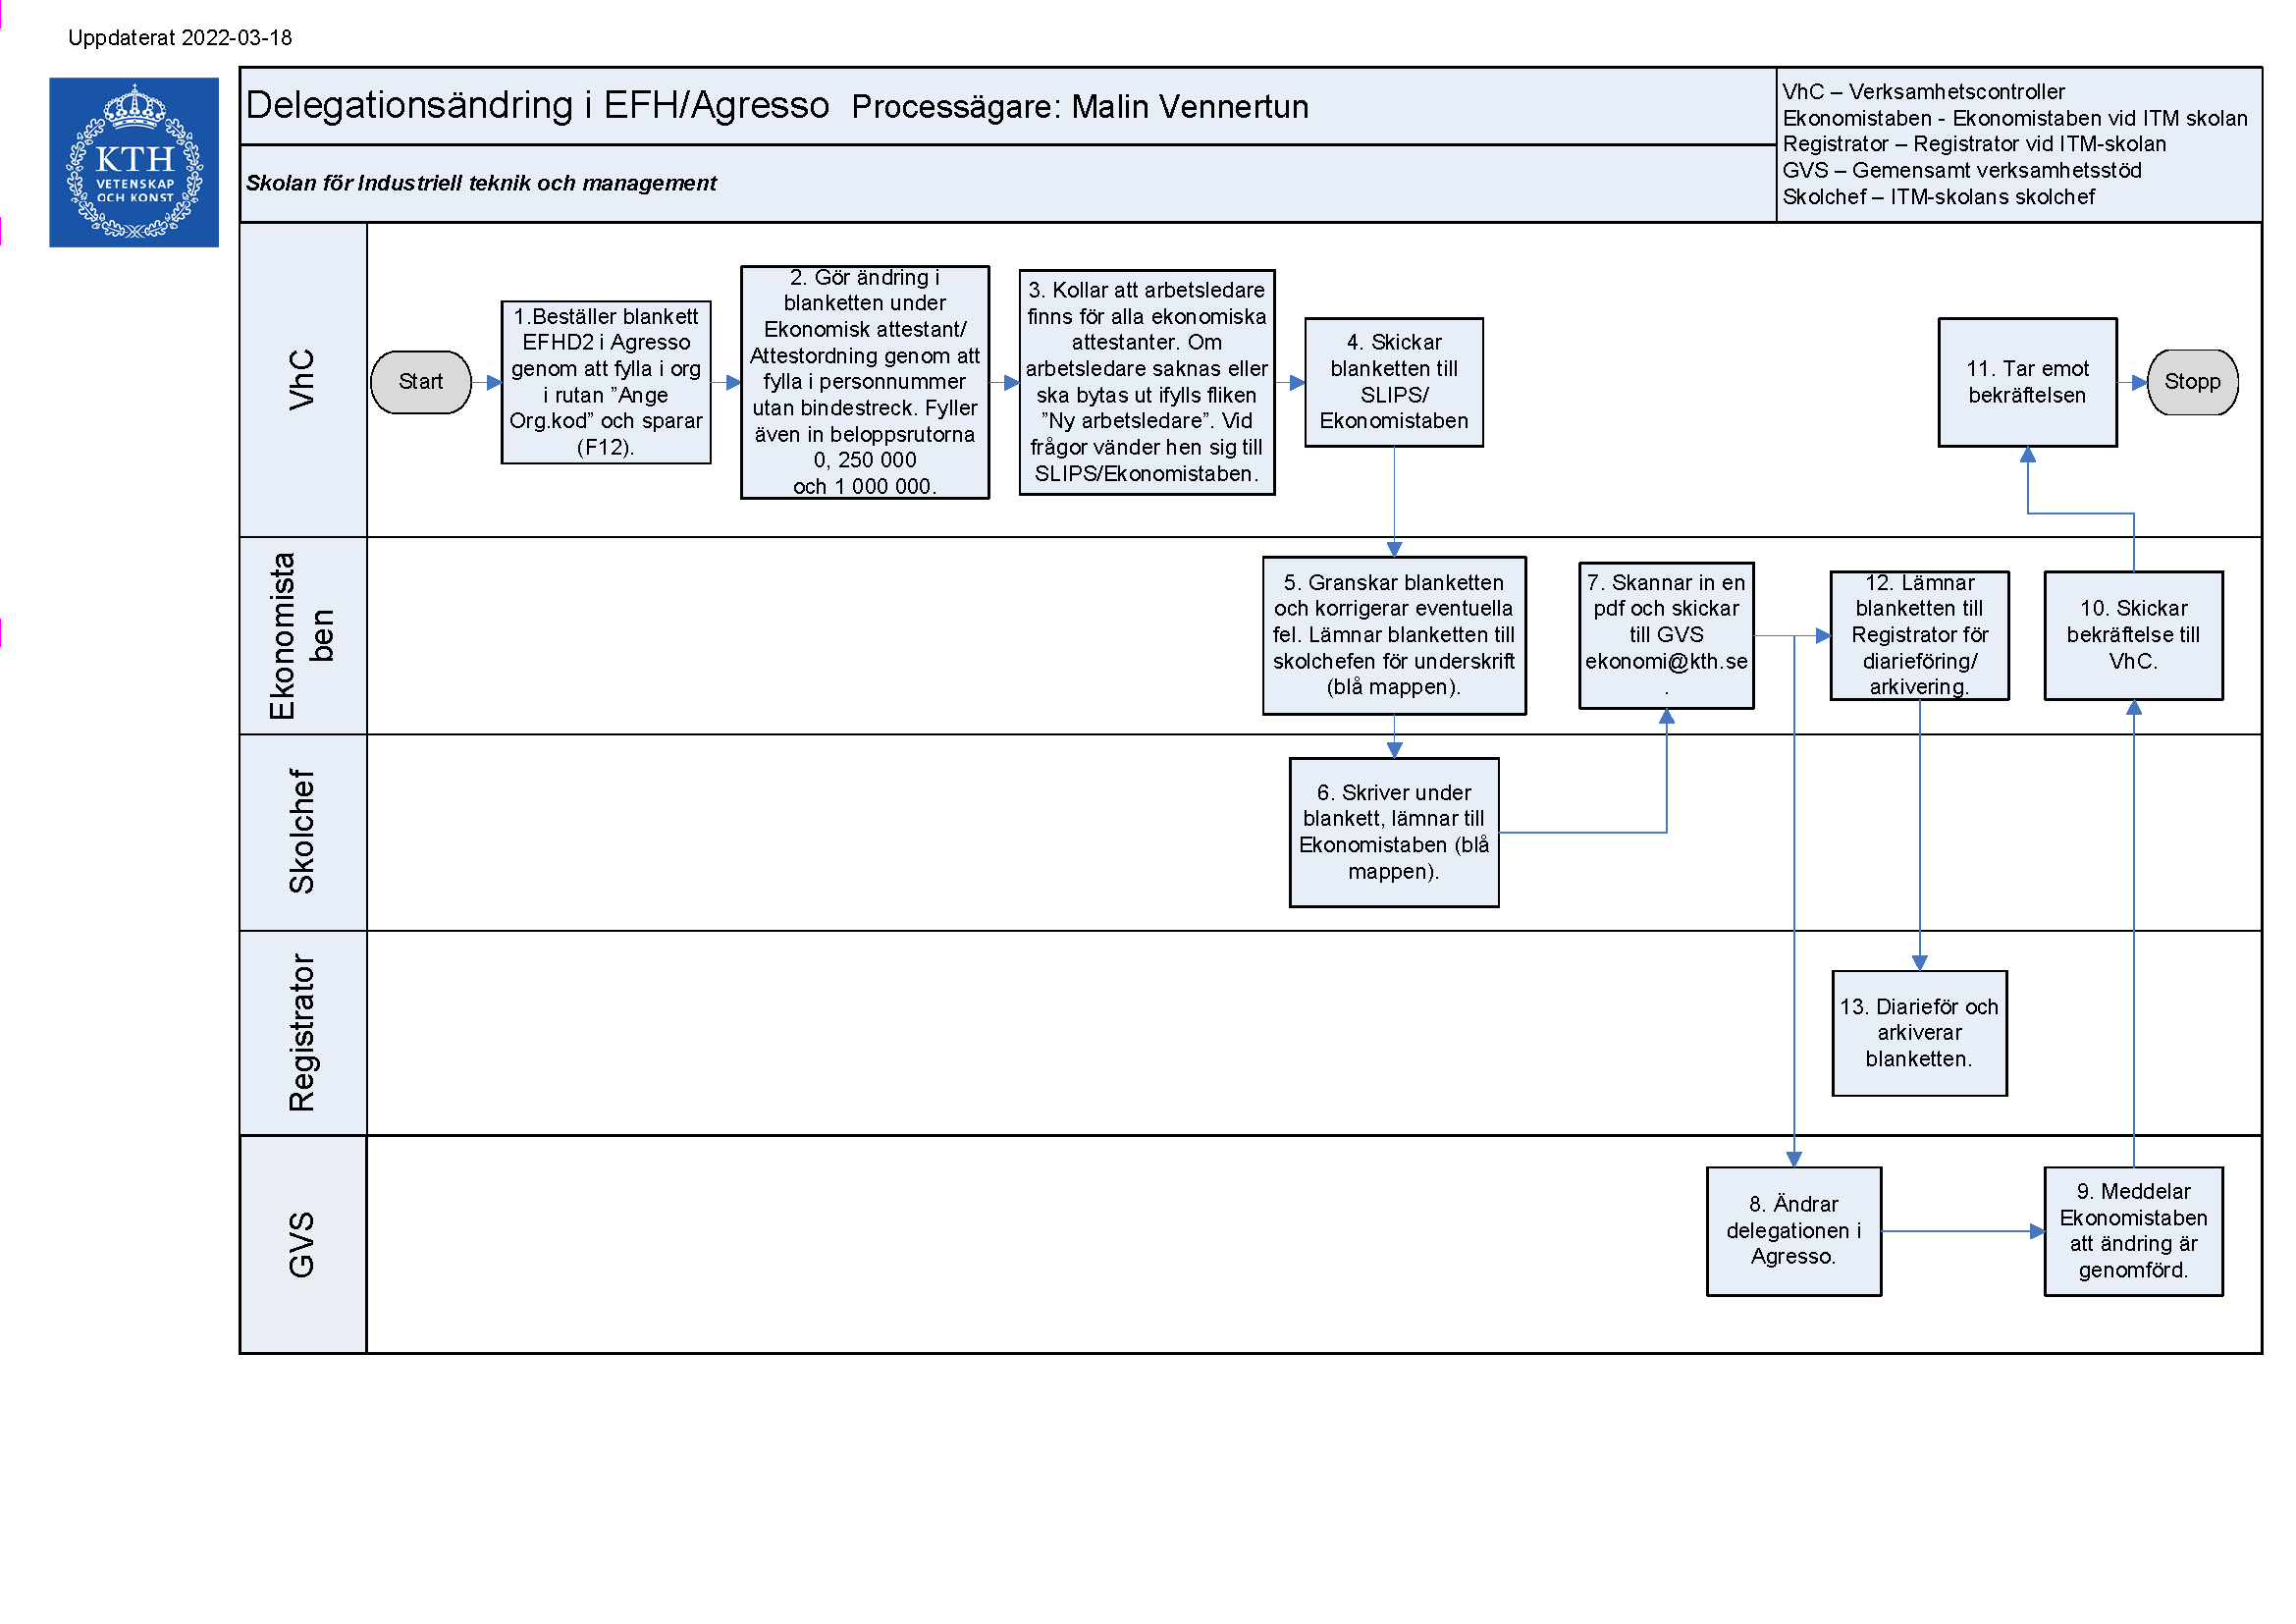 Processkarta delegationsändring i EFH. Finns även i textform på den här sidan.